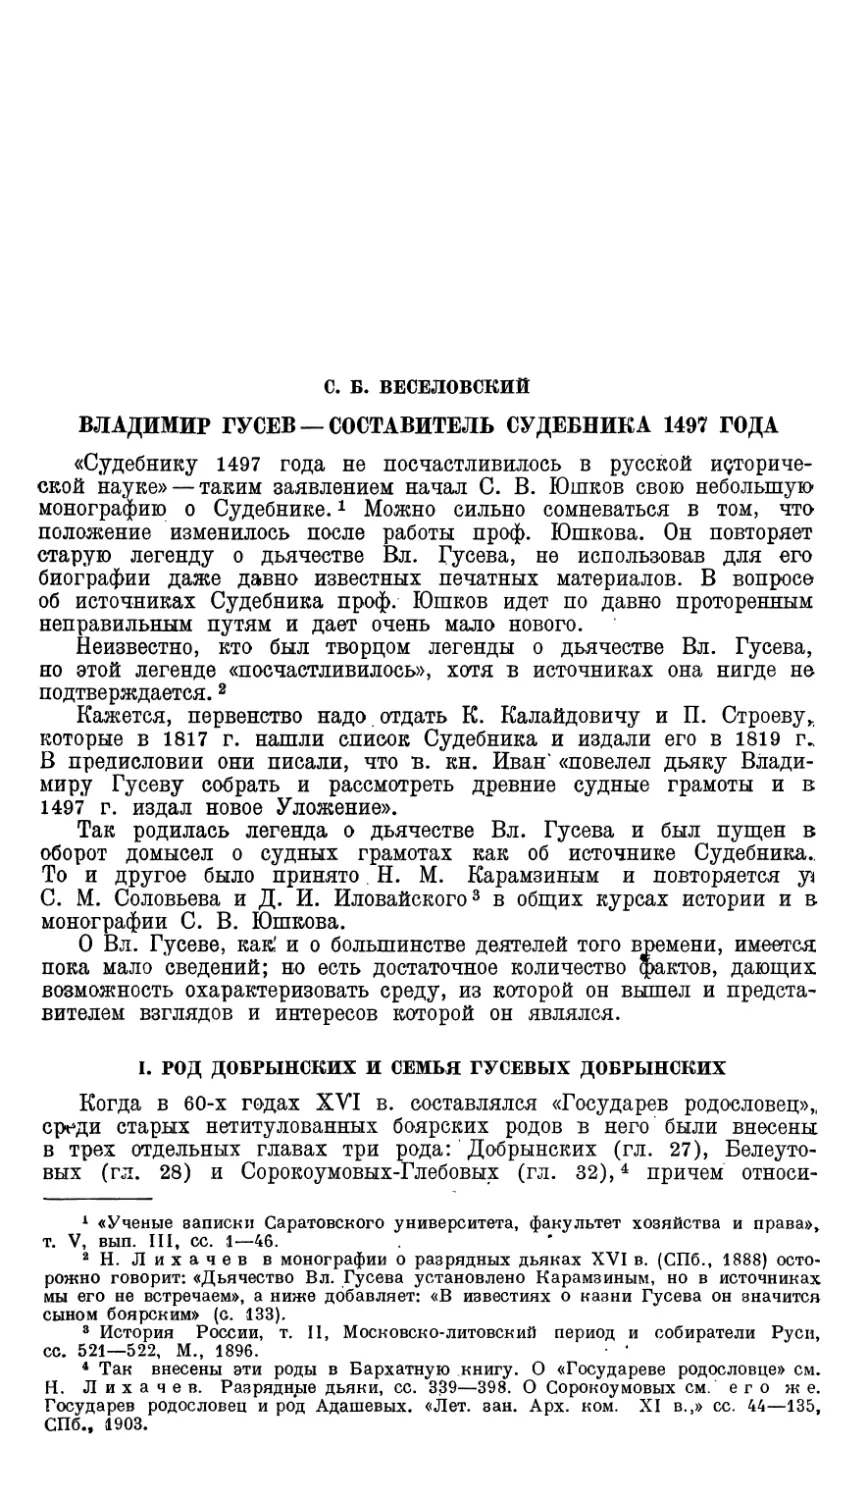 С.Б. Веселовский. Владимир Гусев — составитель судебника 1497 года